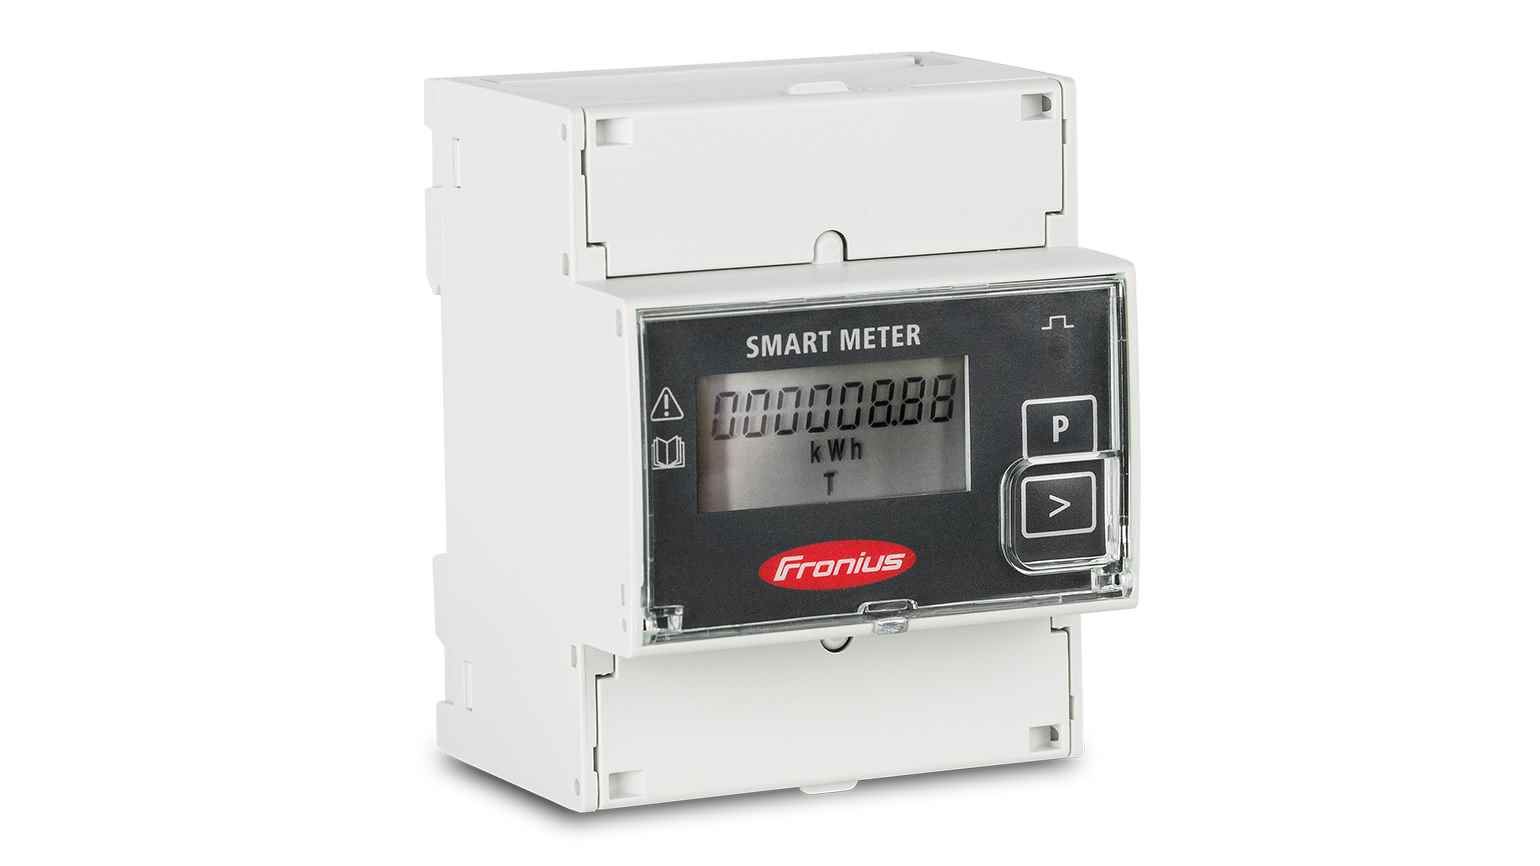 fronts smart meter